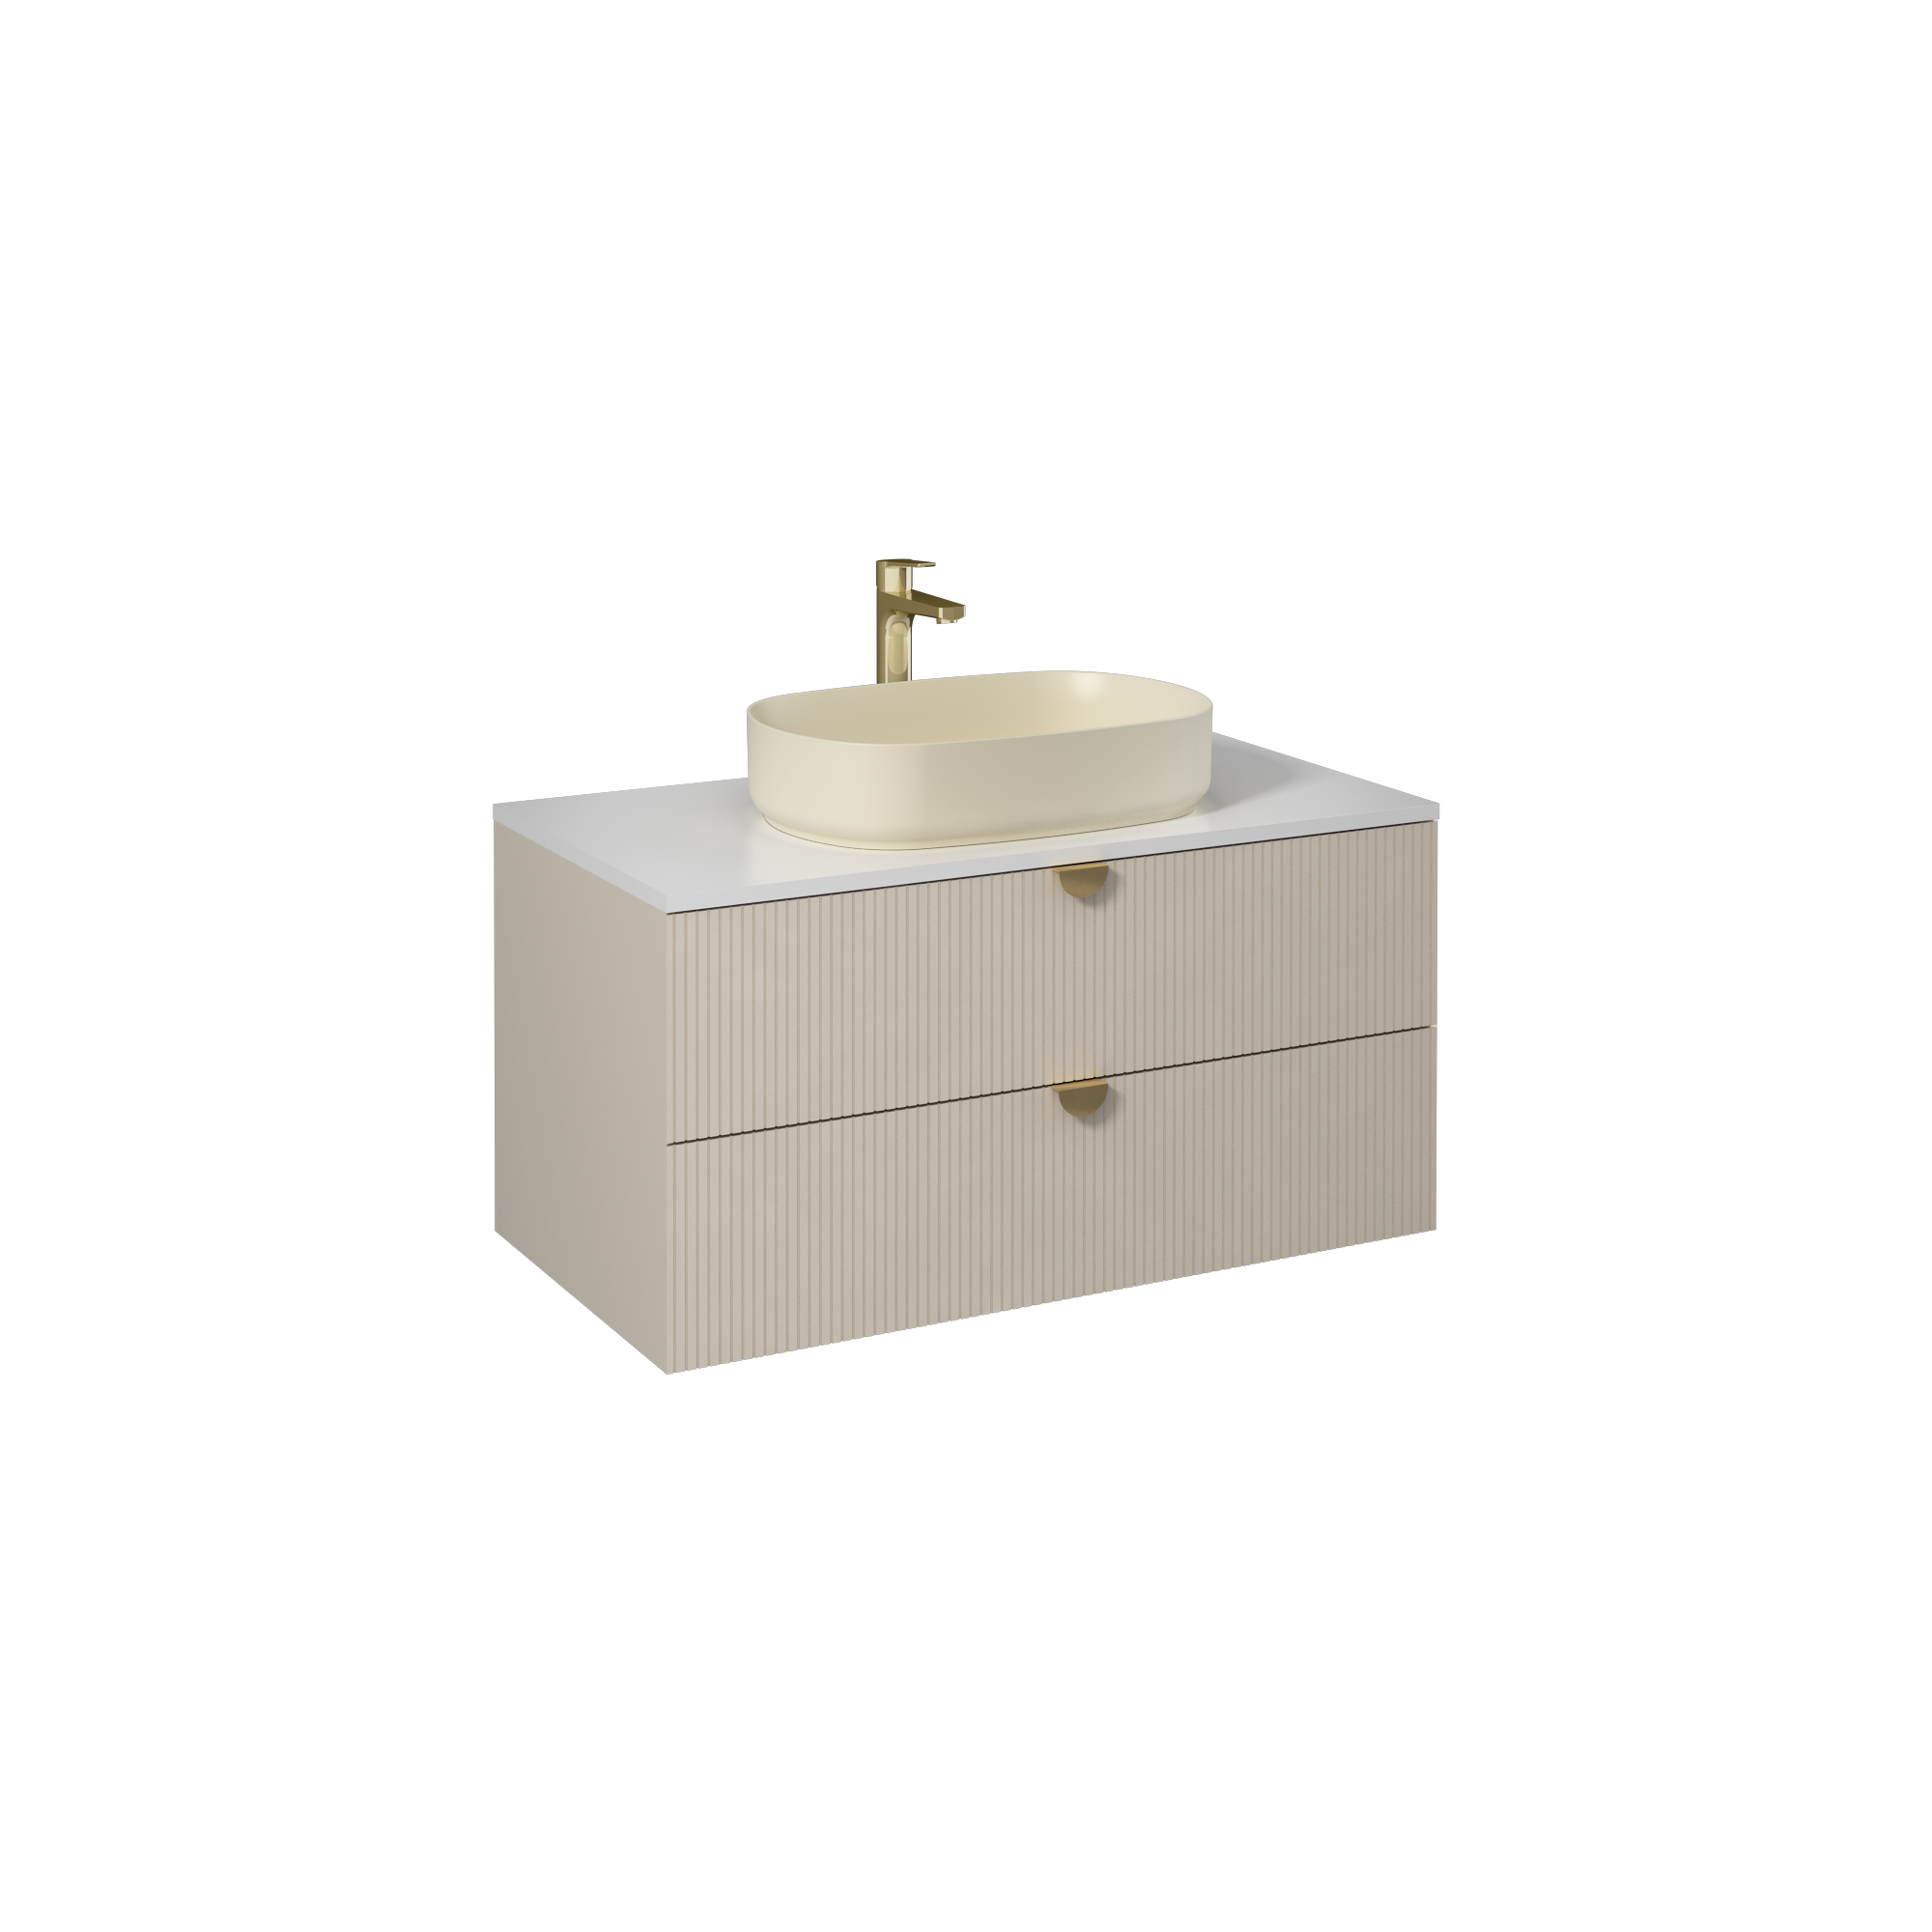 Infinity Washbasin Cabinet Cream, with Ivory Washbasin 39"